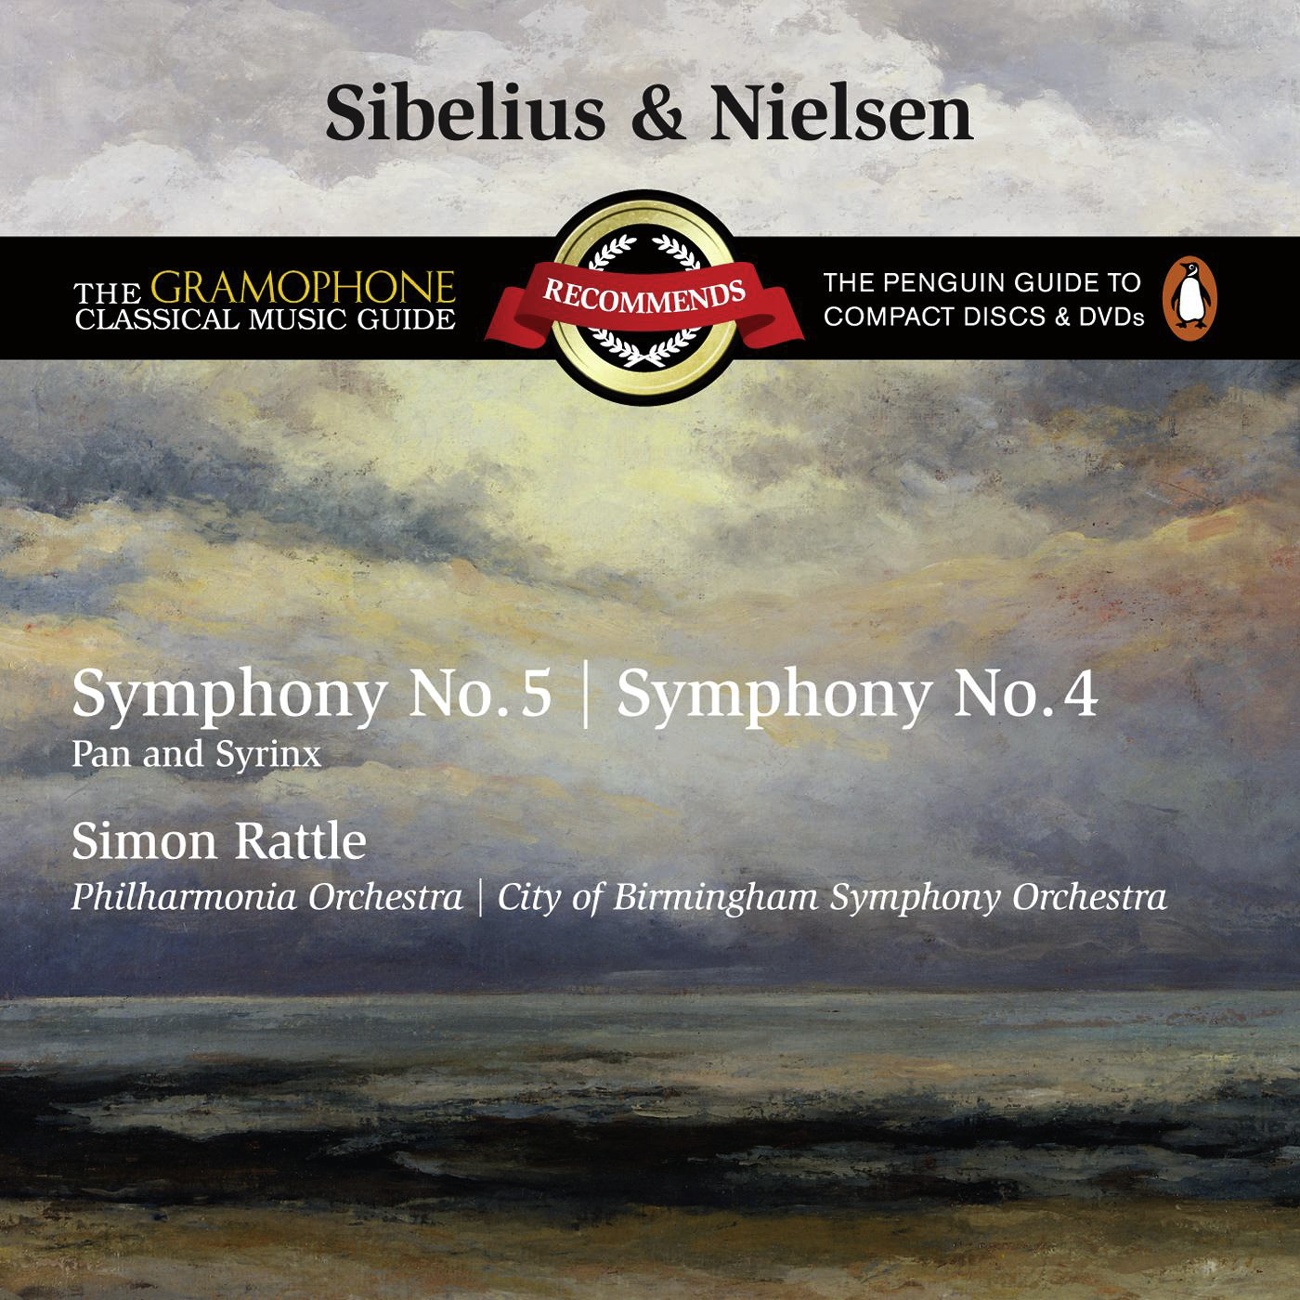 Symphony No. 5 in E flat Op. 82: I.       Tempo molto moderato - Allegro moderato - Presto